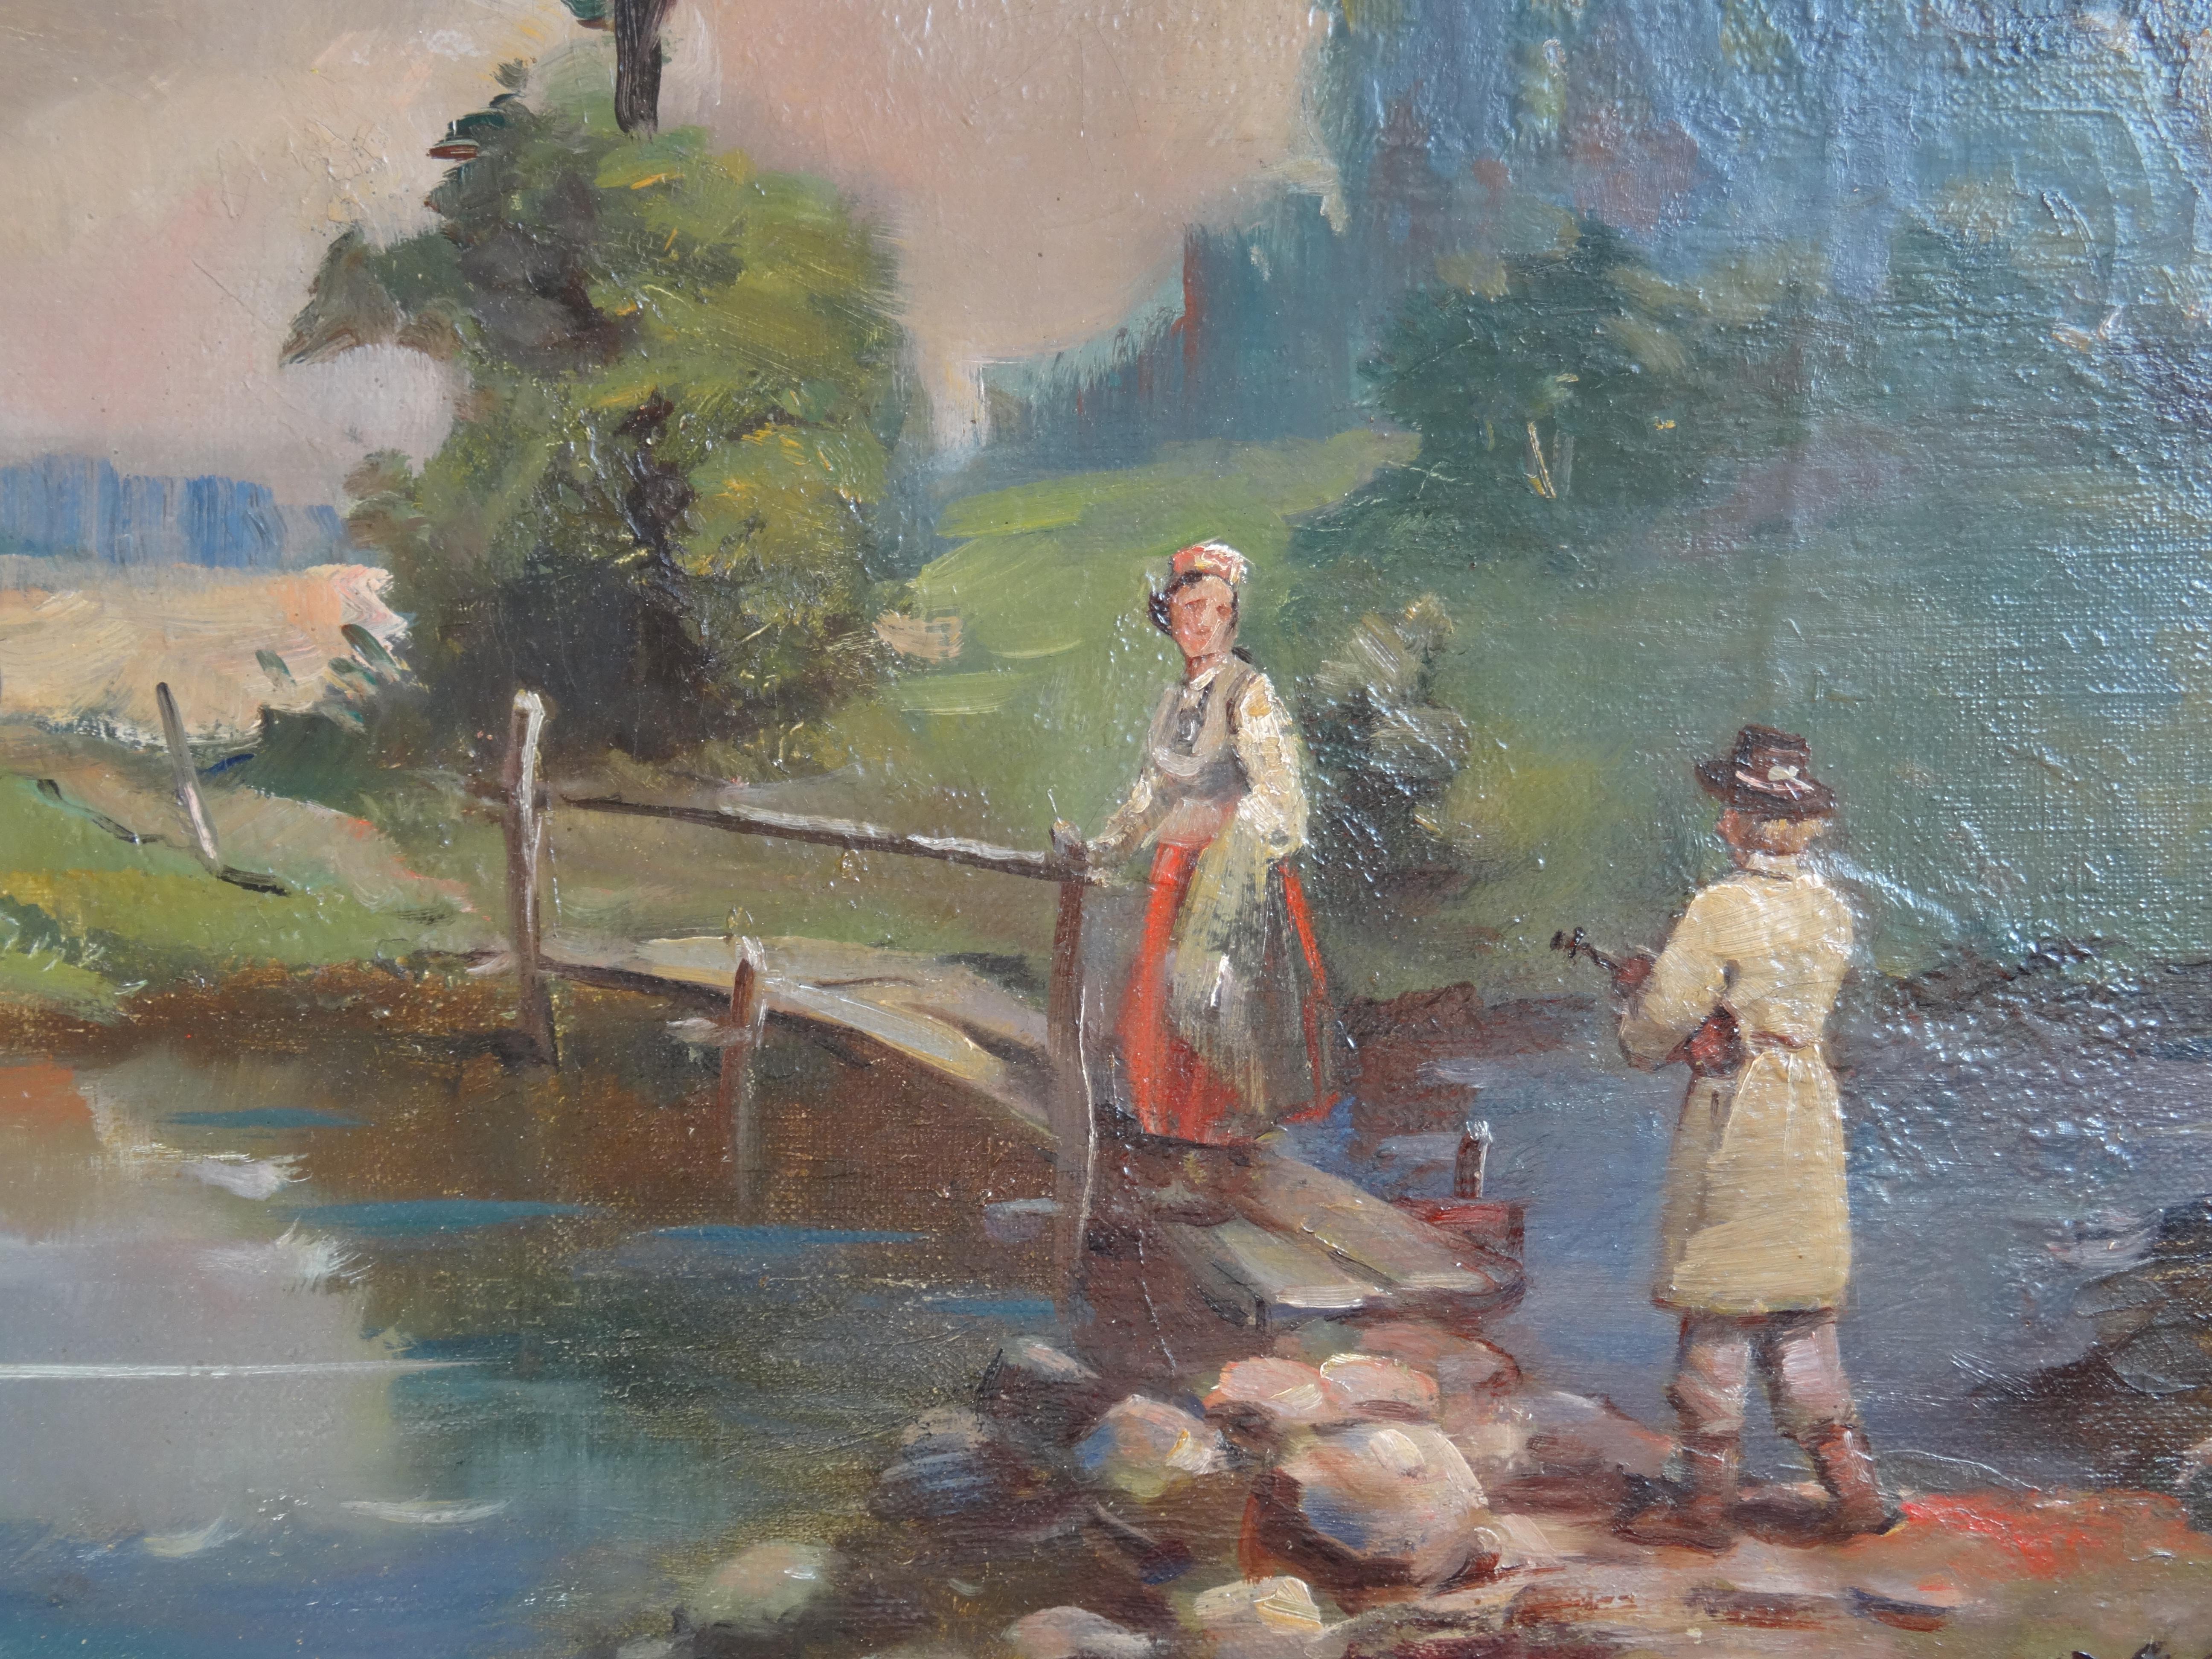 histoire folklorique. 1960. Peinture à l'huile sur toile, 39 x49 cm - Réalisme Painting par Voldemars Caune 